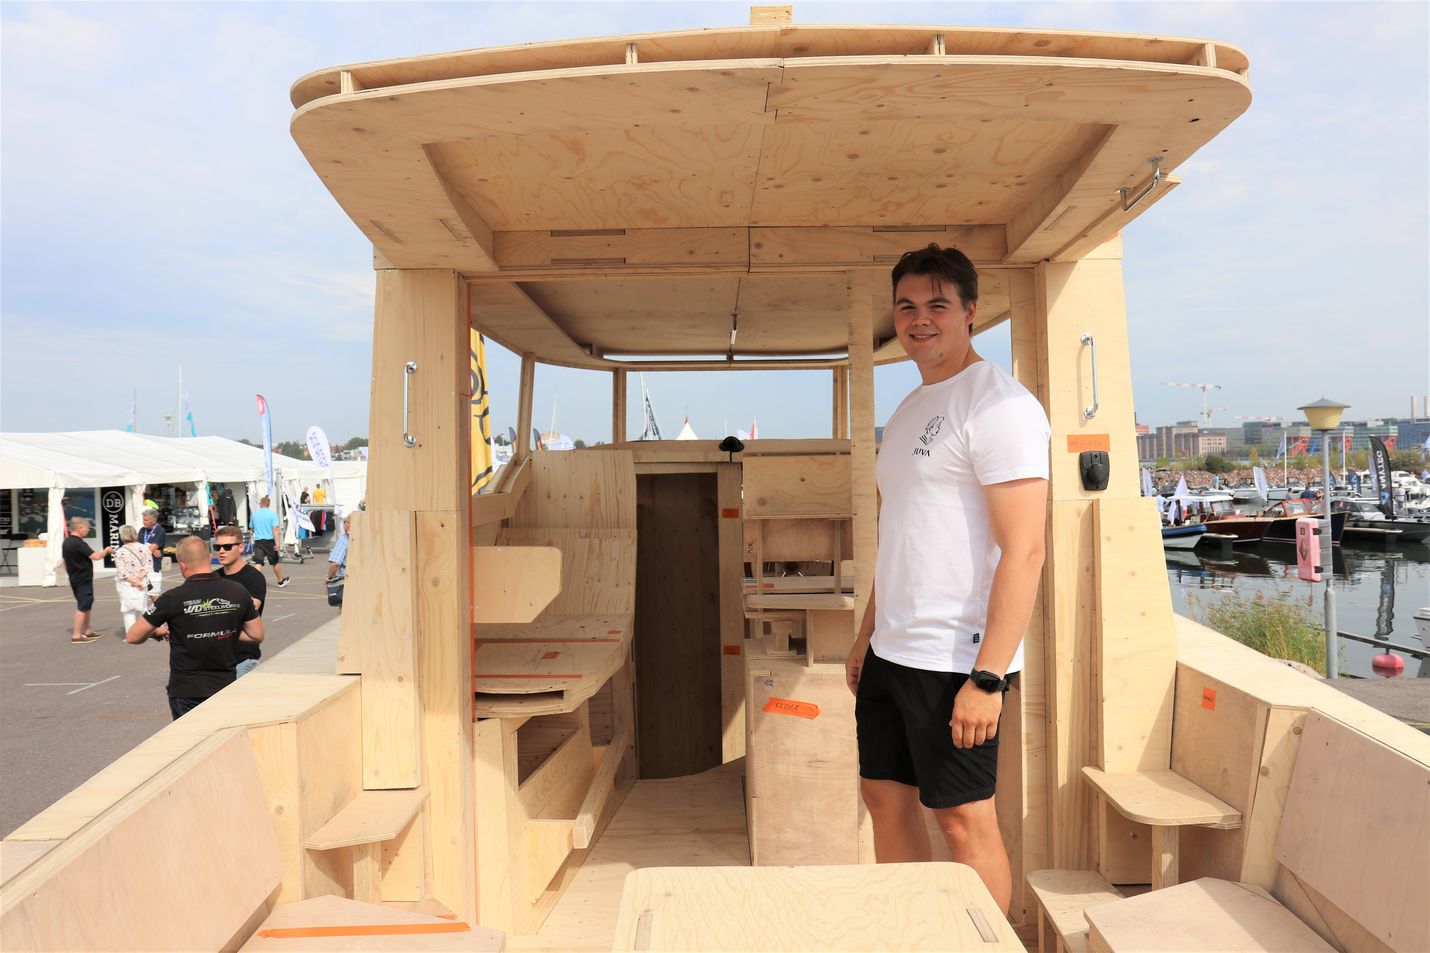 Juva Yachtsin uuden sähköveneen puinen muotti rakennettiin puolessa vuodessa. Ensimmäiset oikeat veneet nähdään vesillä ensi kesänä, Casper Käyhkö kertoo.